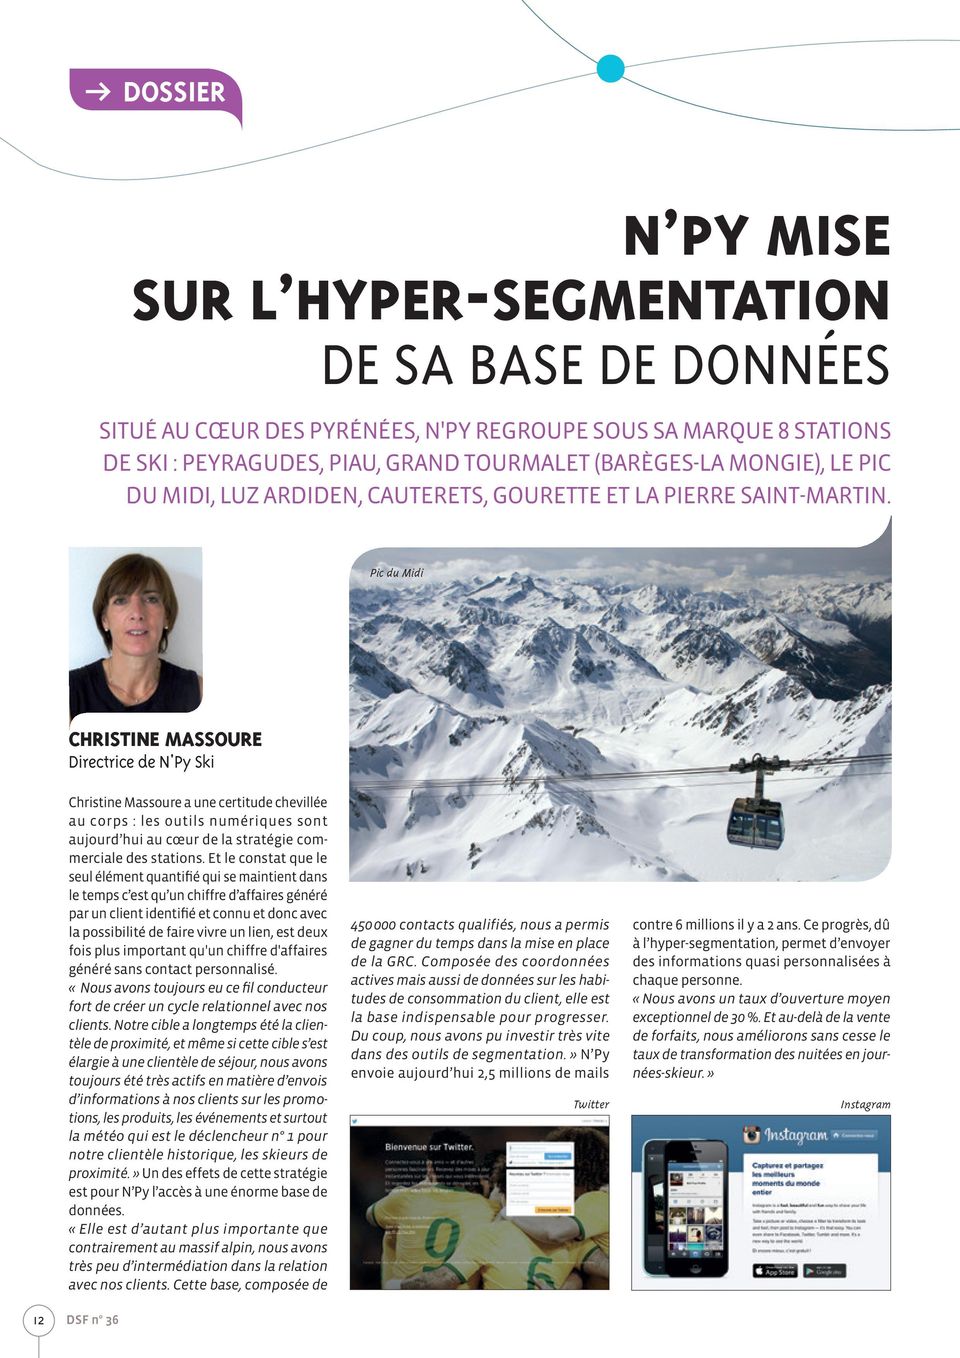 Pic du Midi CHRISTINE MASSOURE Directrice de N'Py Ski Christine Massoure a une certitude chevillée au corps : les outils numériques sont aujourd hui au cœur de la stratégie commerciale des stations.